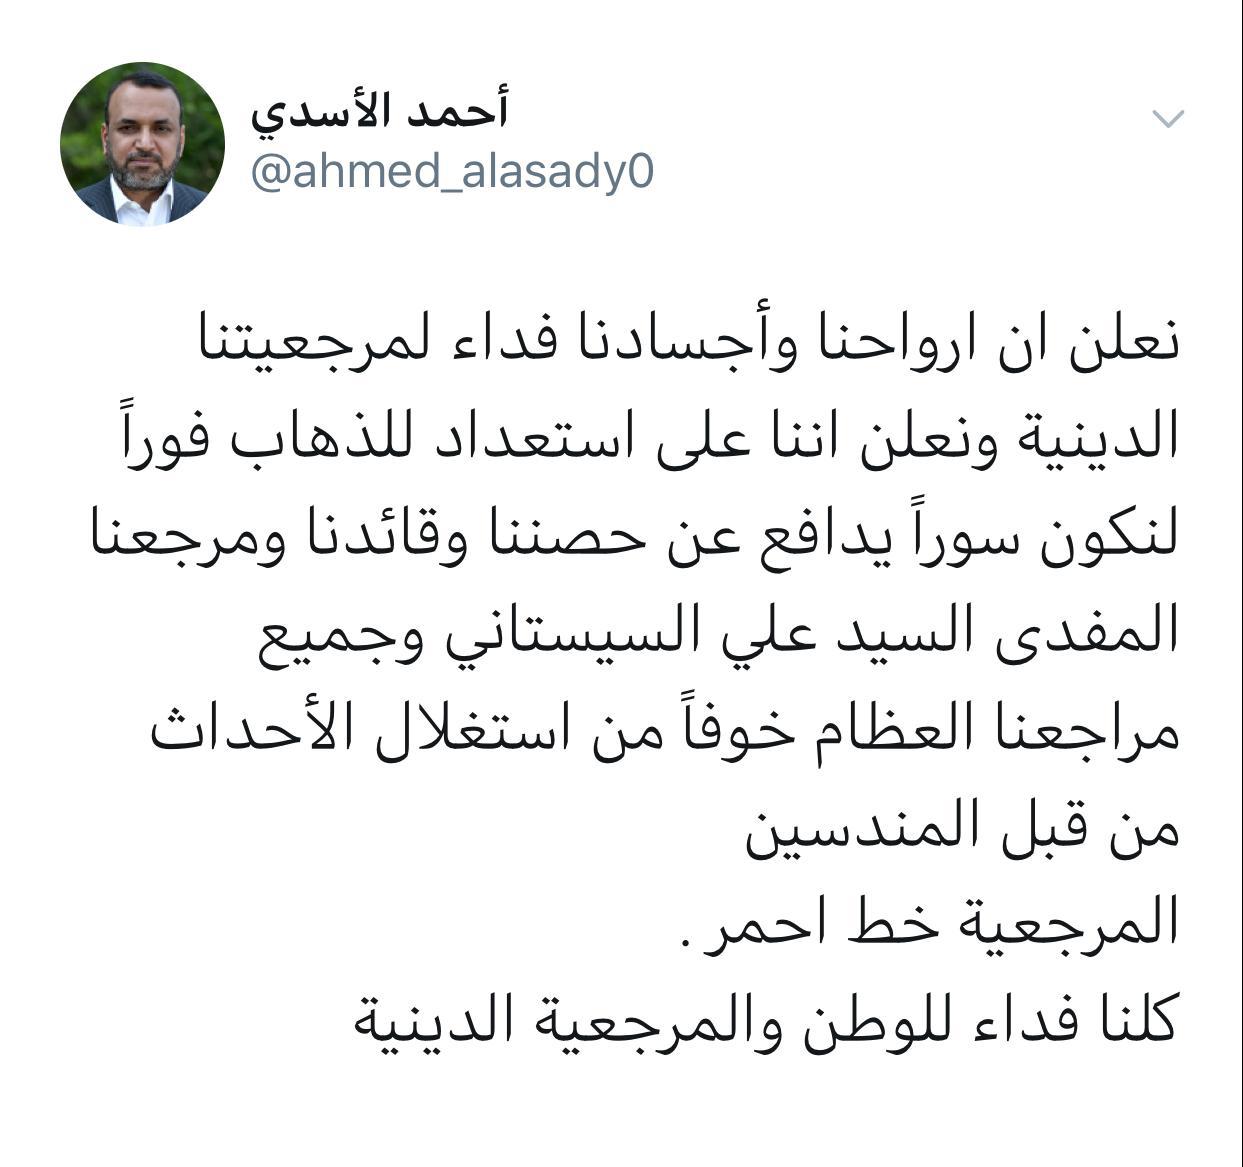 الأسدي : مستعدون للدفاع عن قائدنا السيستاني وجميع مراجعنا خوفا من استغلال الأحداث من قبل المندسين